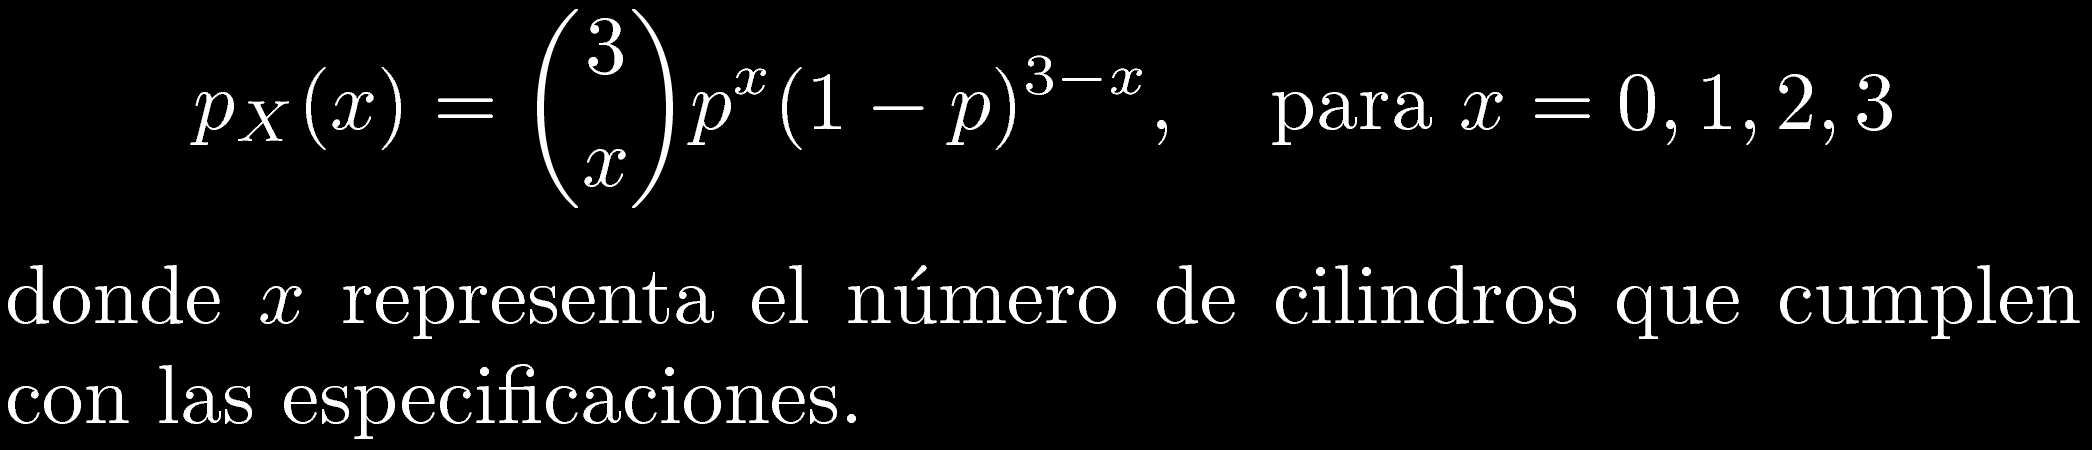 s cilindro que cumple con las especificaciones n cilindro que NO las cumple P(s) = p P(n) = 1-p P[0 OK] = (n,n,n) = (1-p)(1-p)(1-p)